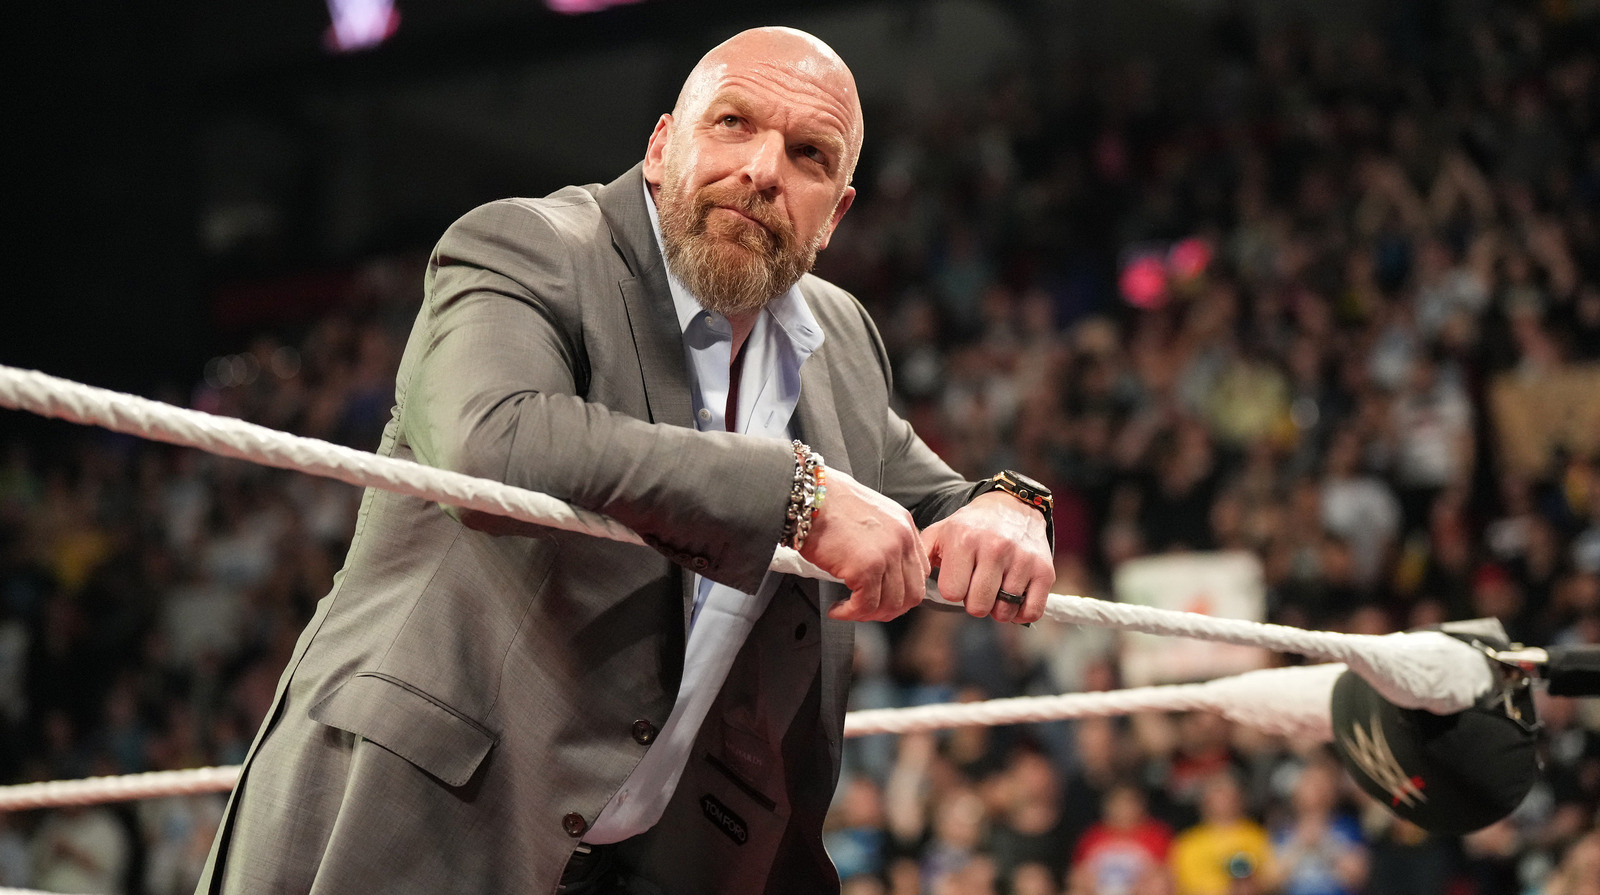 Het contract van de voormalige WWE-kampioen loopt binnenkort af